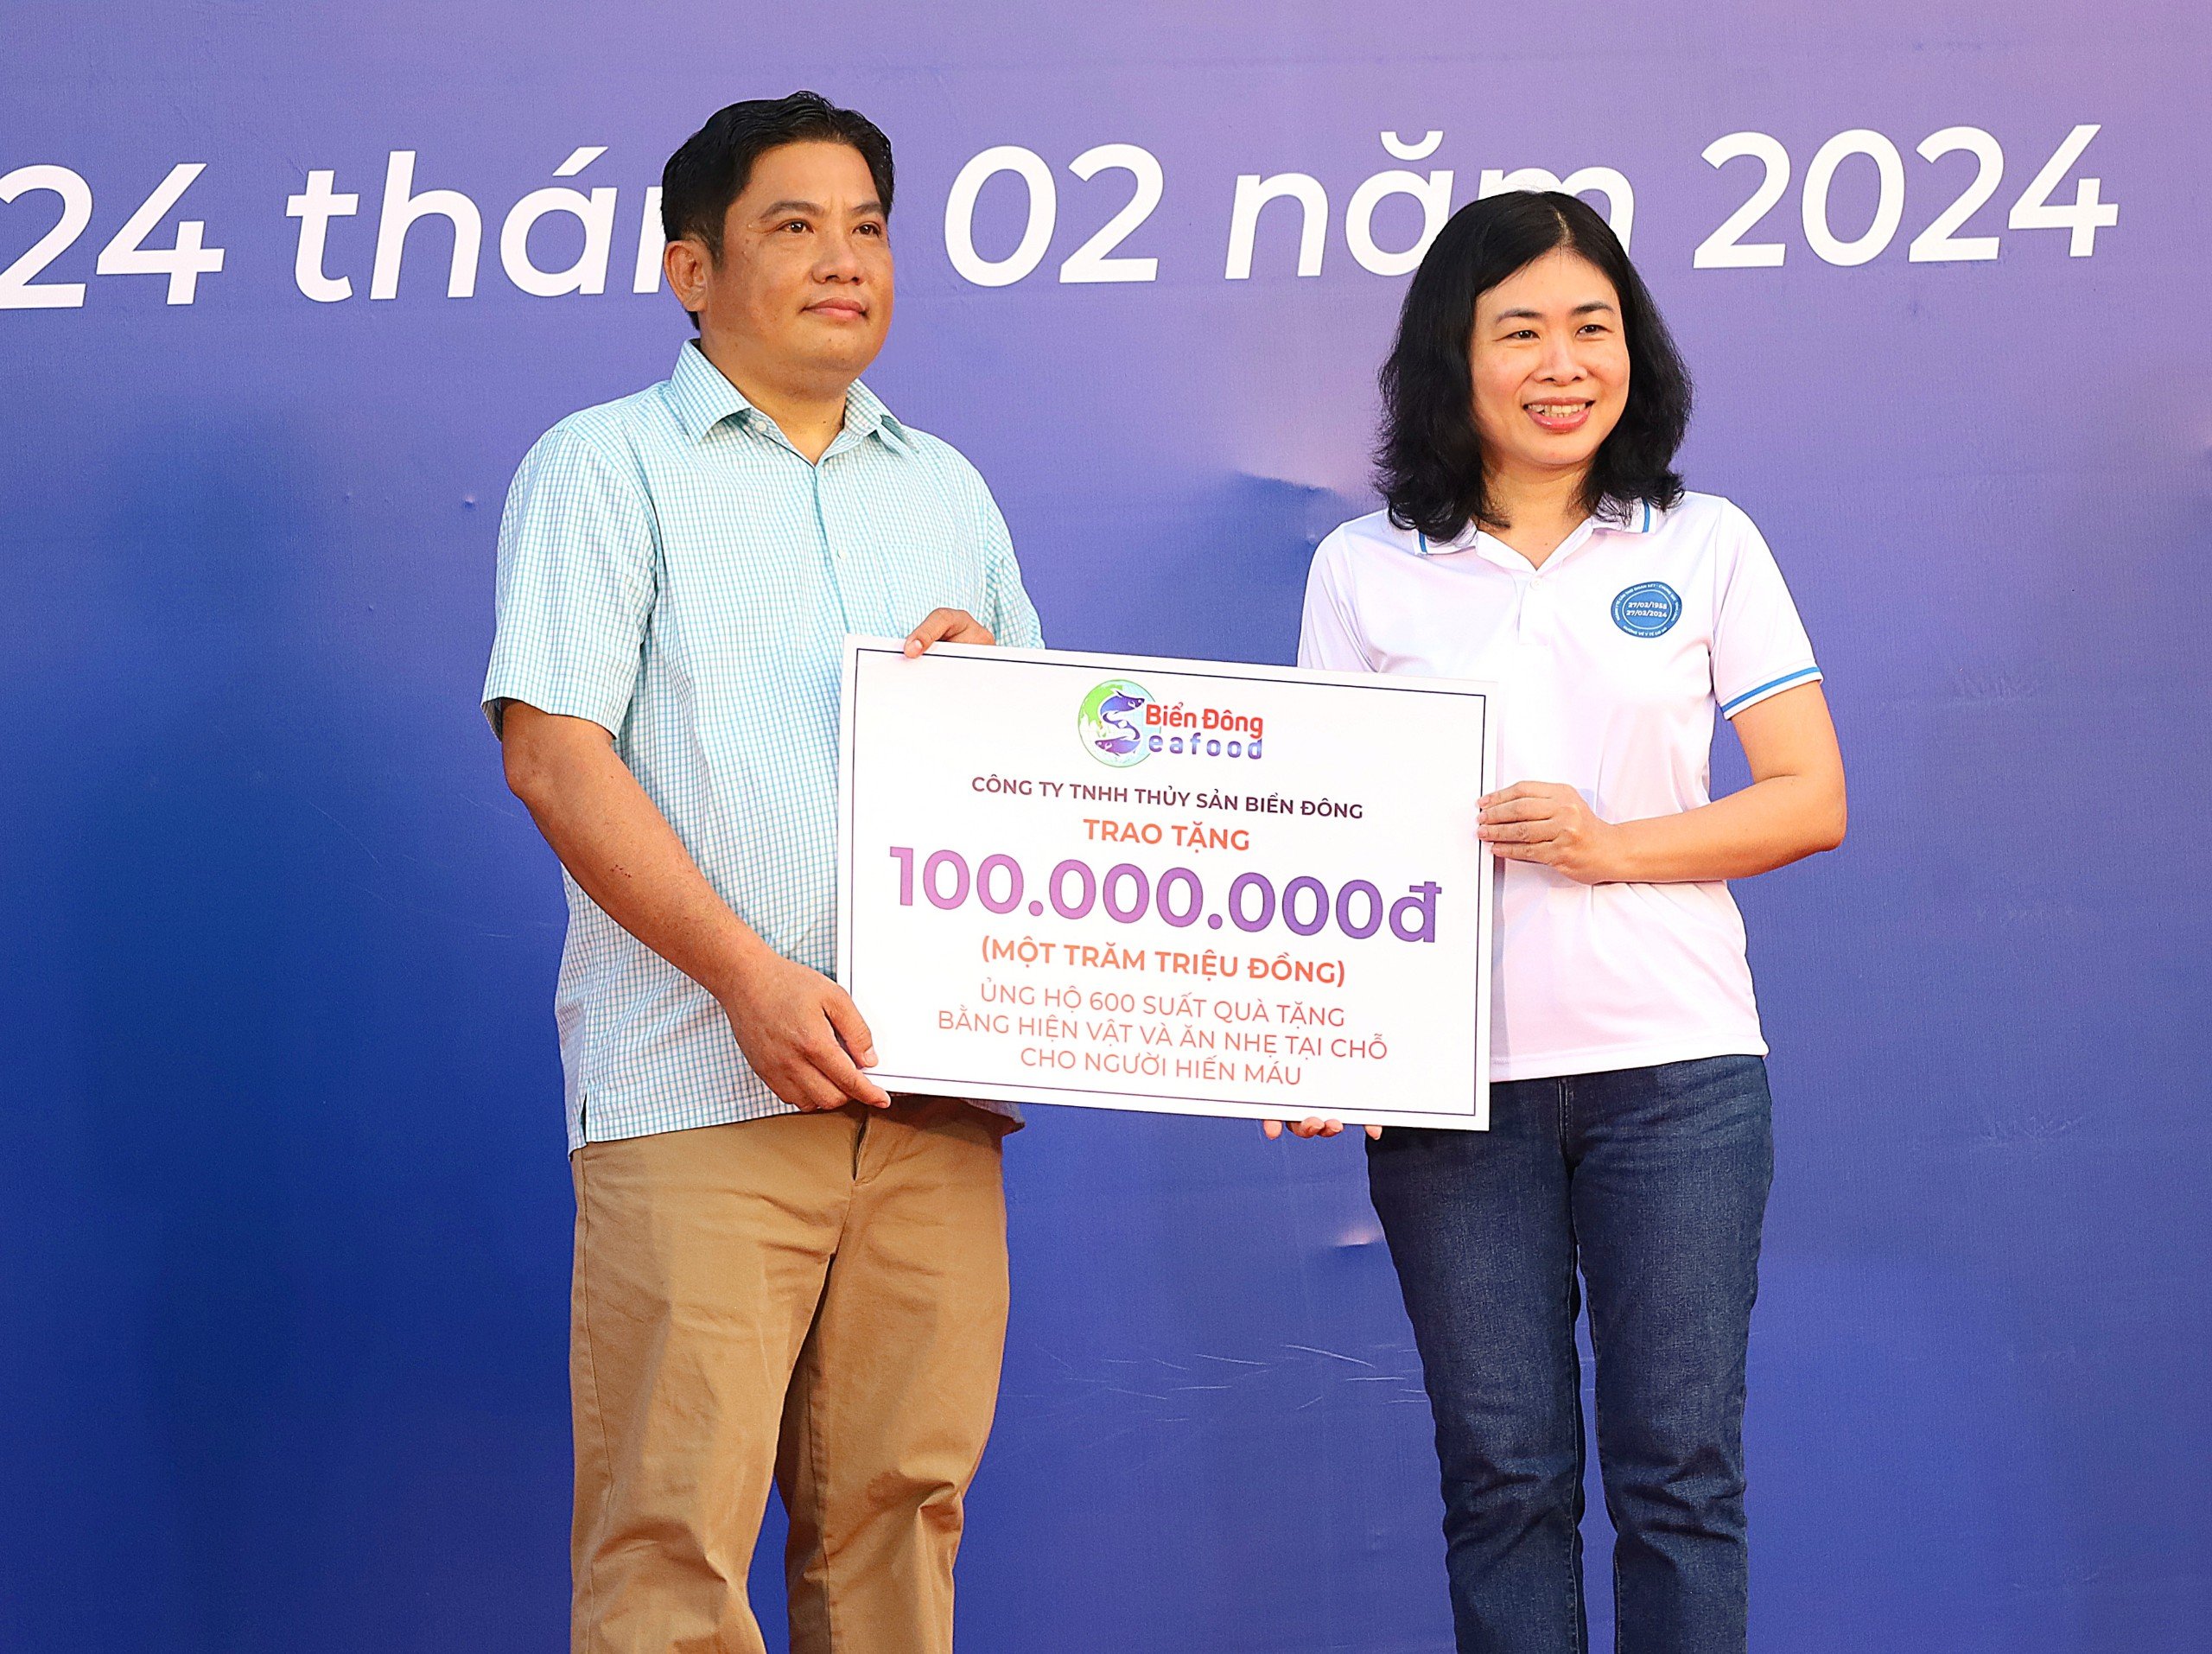 Đại diện Công ty TNHH Thủy sản Biển Đông trao bảng tượng trưng ủng hộ 600 suất quà tặng bằng hiện vật và ăn nhẹ tại chỗ cho người hiến máu.